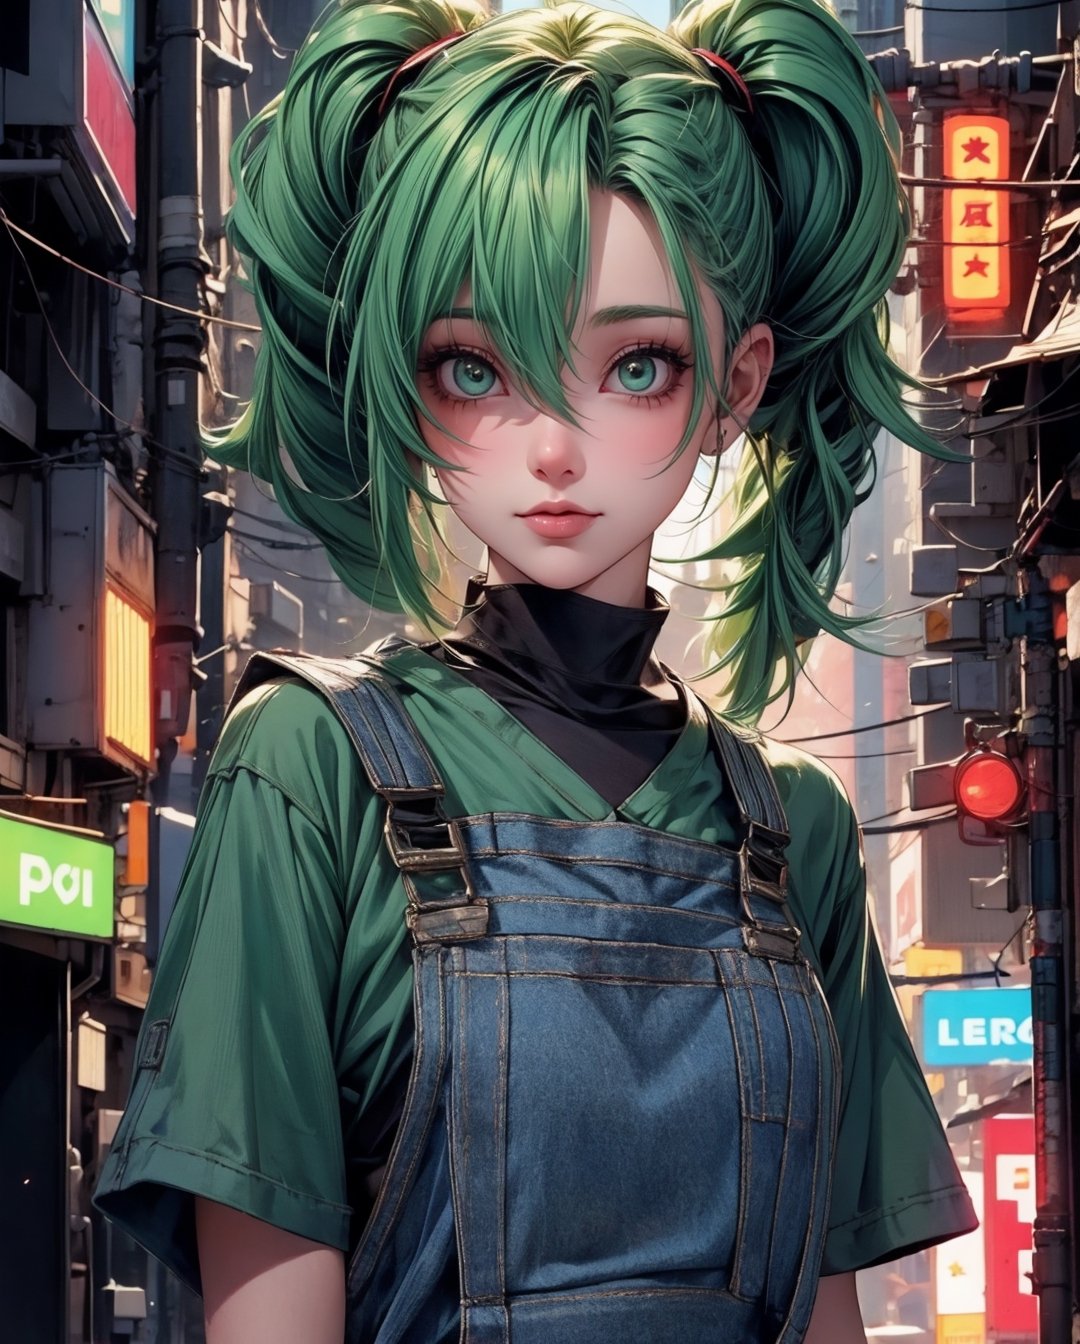 1 green-haired girl with overalls, pendurada em  um poste de luz , Looking at camera,Camera angle up close,Cabelo pigtails, seios grandes,,em uma cidade neon, (estilo cyberpunk) 8K Ultra realista
